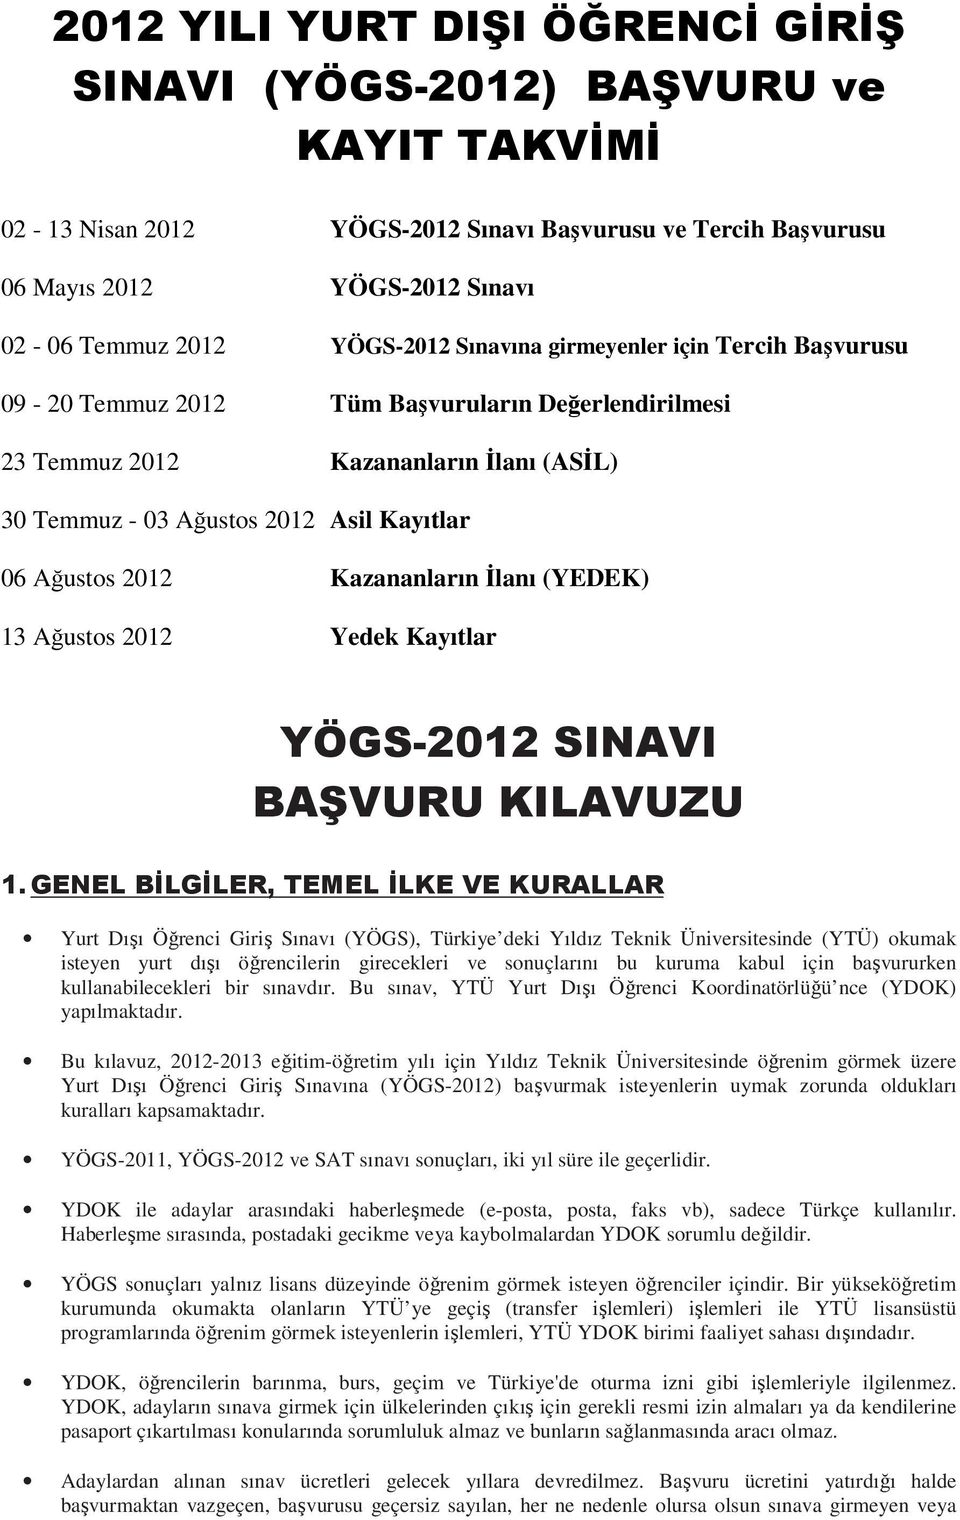 2012 Kazananların İlanı (YEDEK) 13 Ağustos 2012 Yedek Kayıtlar YÖGS-2012 SINAVI BAŞVURU KILAVUZU 1.